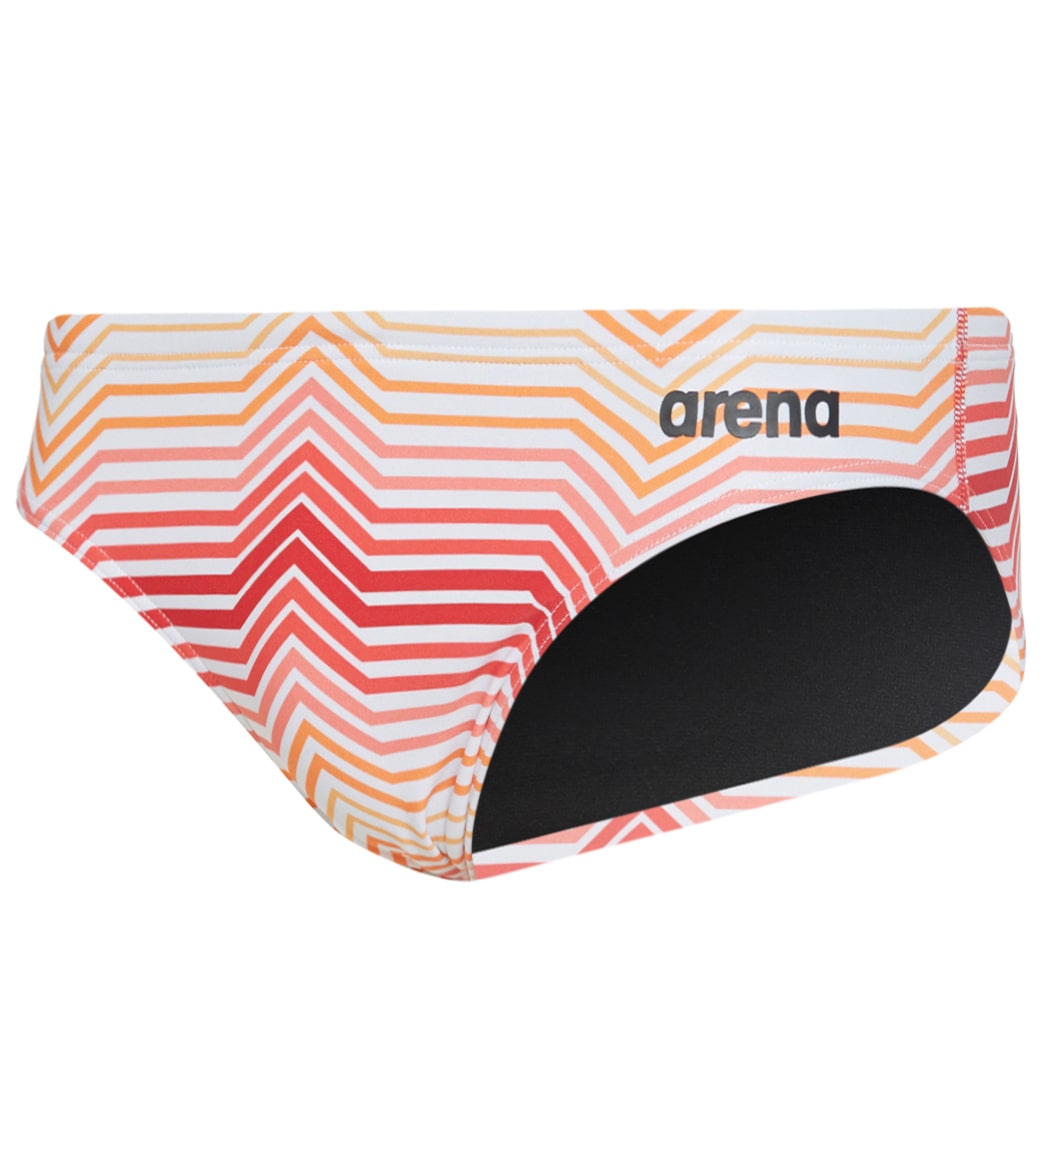 Arena Men's Multicolor Stripes Maxlife Brief Swimsuit - Red/Orange/Multi 22 - Swimoutlet.com